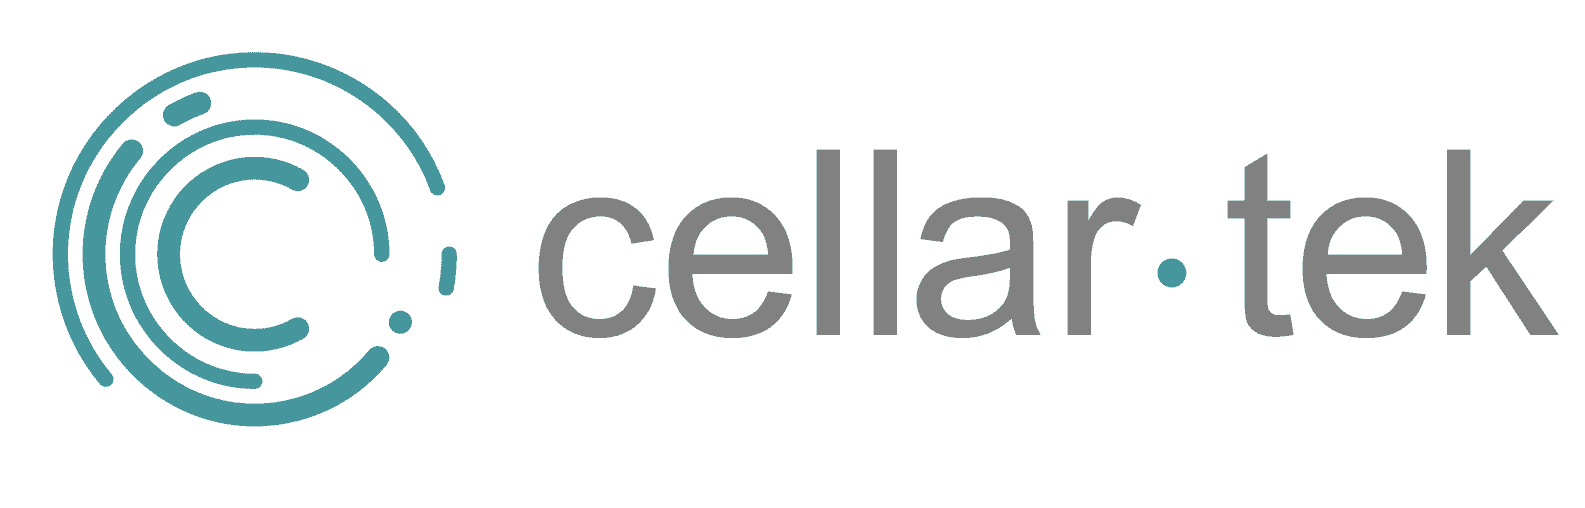 Cellar-tek logo